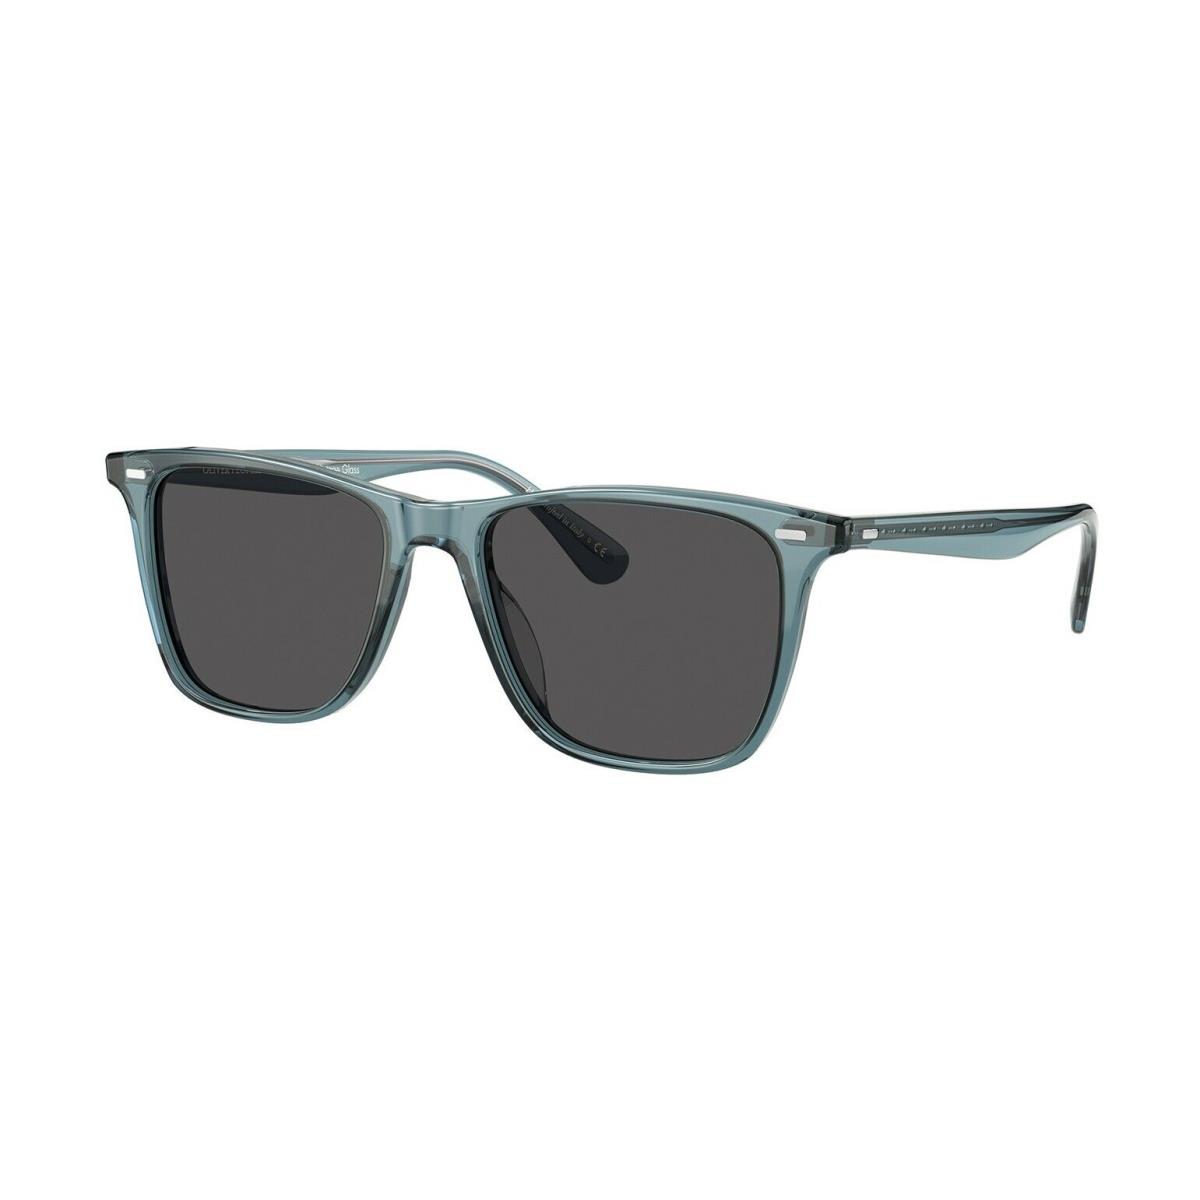 Oliver Peoples Ollis Sun OV 5437SU Washed Teal/carbon Grey 1617/R5 Sunglasses - Frame: Washed Teal, Lens: Carbon Grey